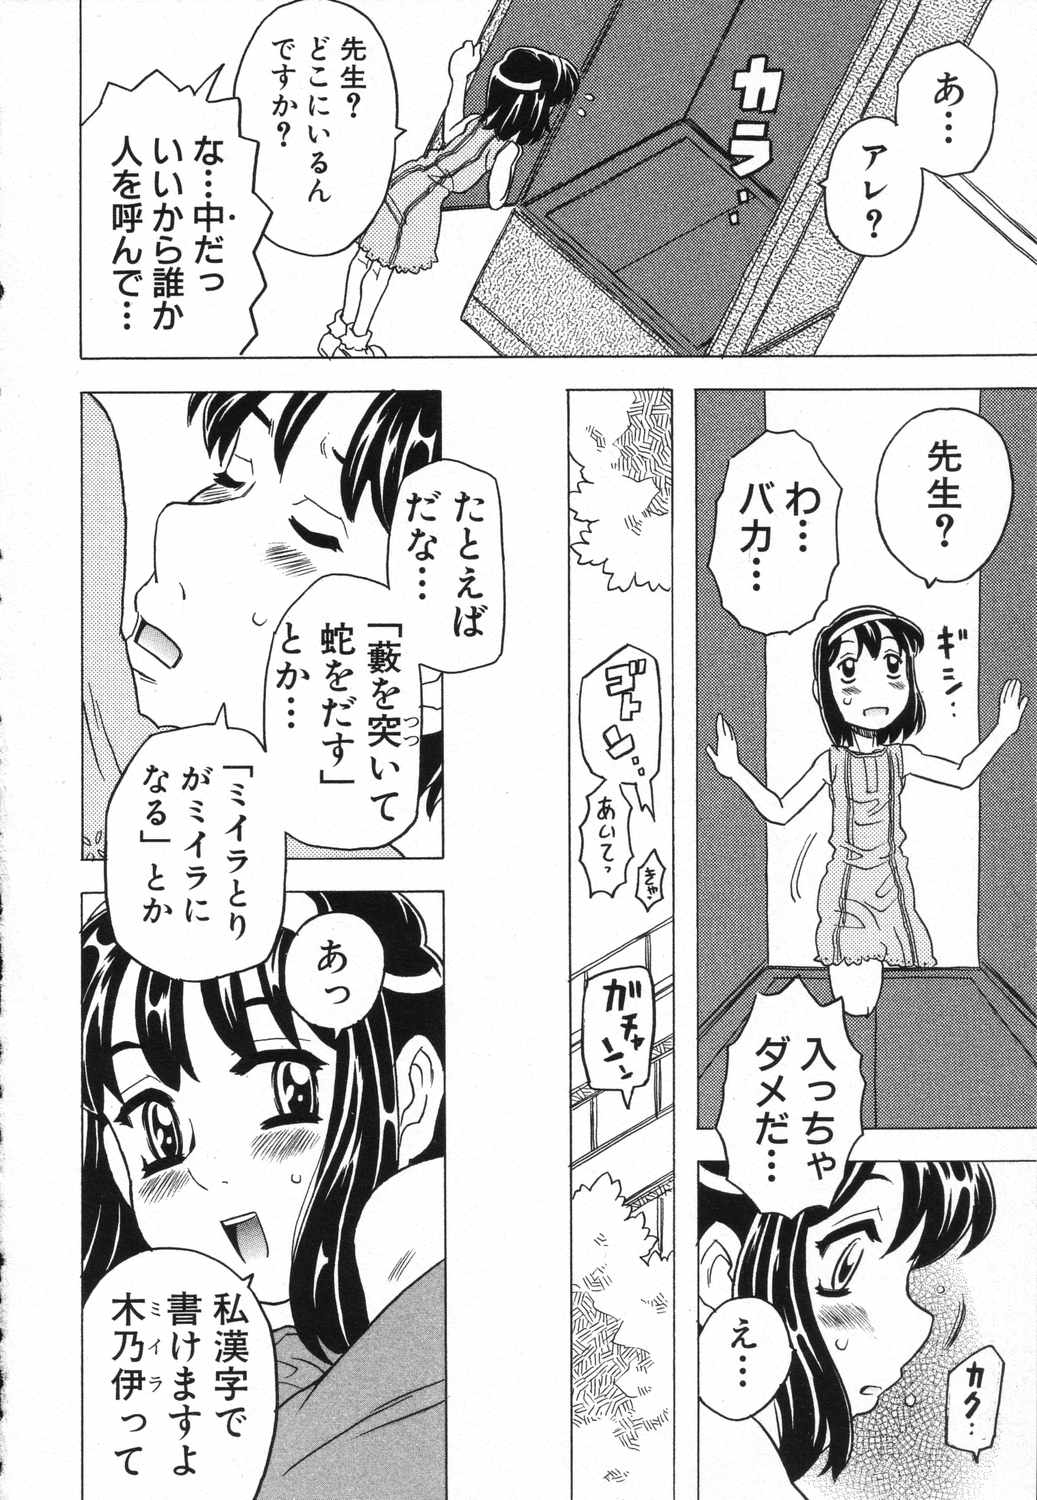 [Anthology] LOCO vol.5 Aki no Omorashi Musume Tokushuu page 11 full